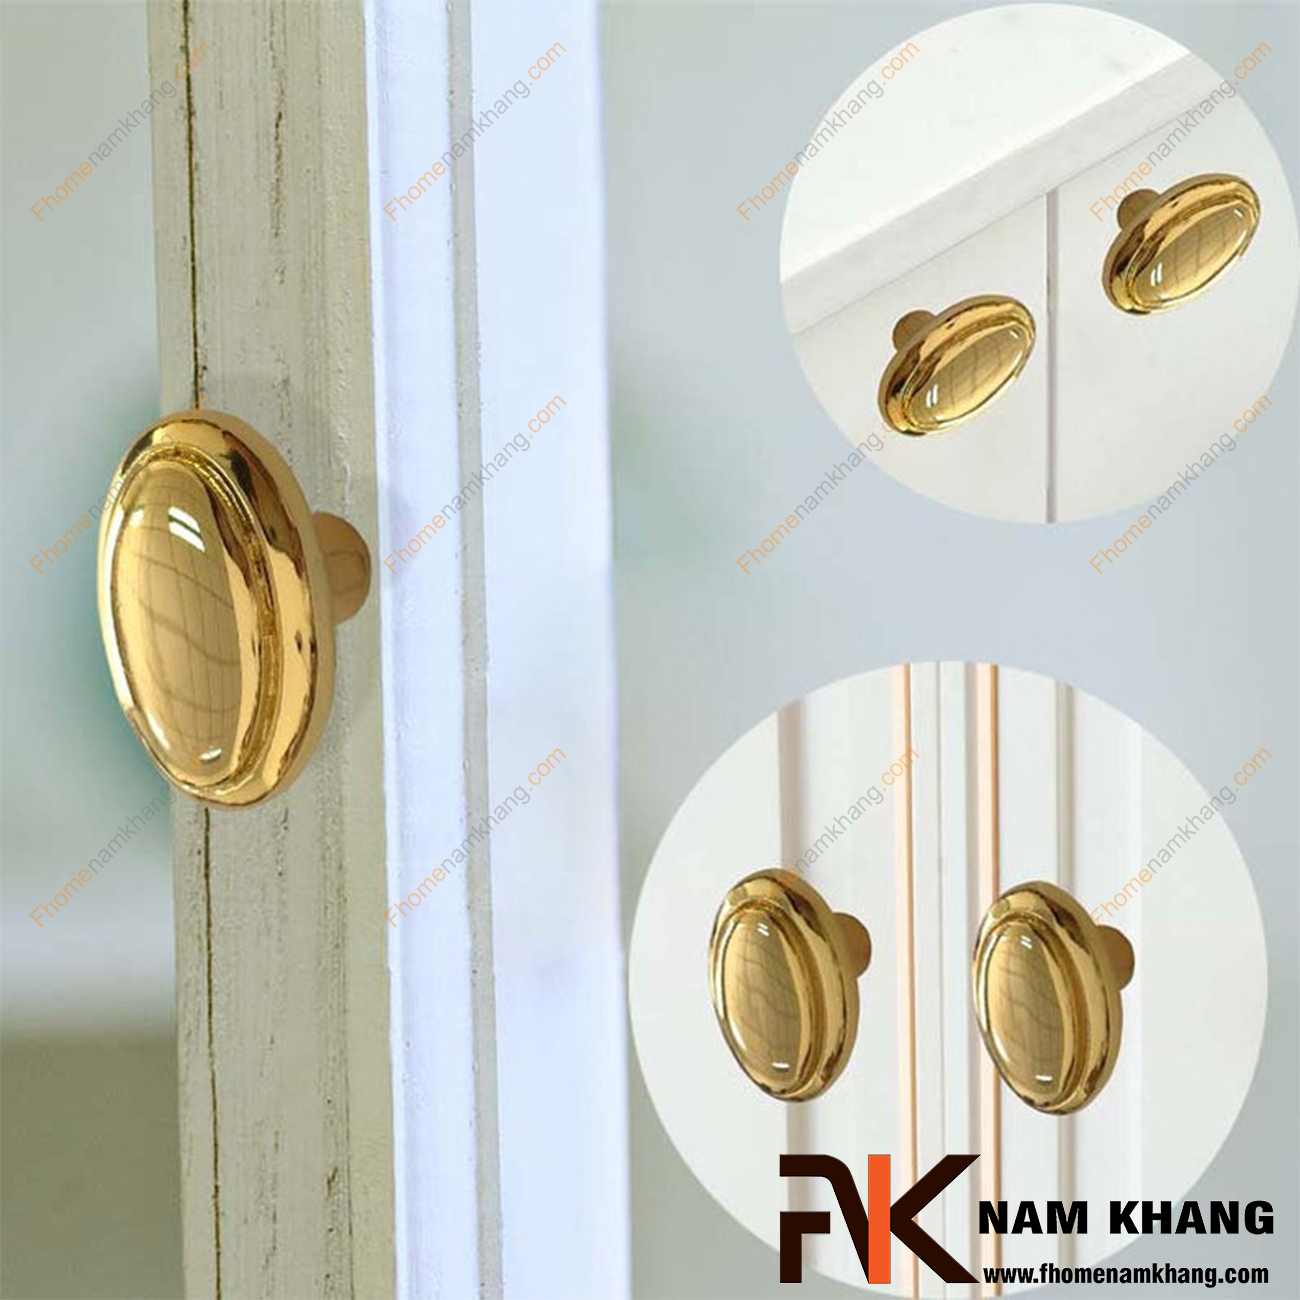 Hình ảnh về dòng sản phẩm Núm kéo cửa tủ hình ovan mạ vàng NK078-V: